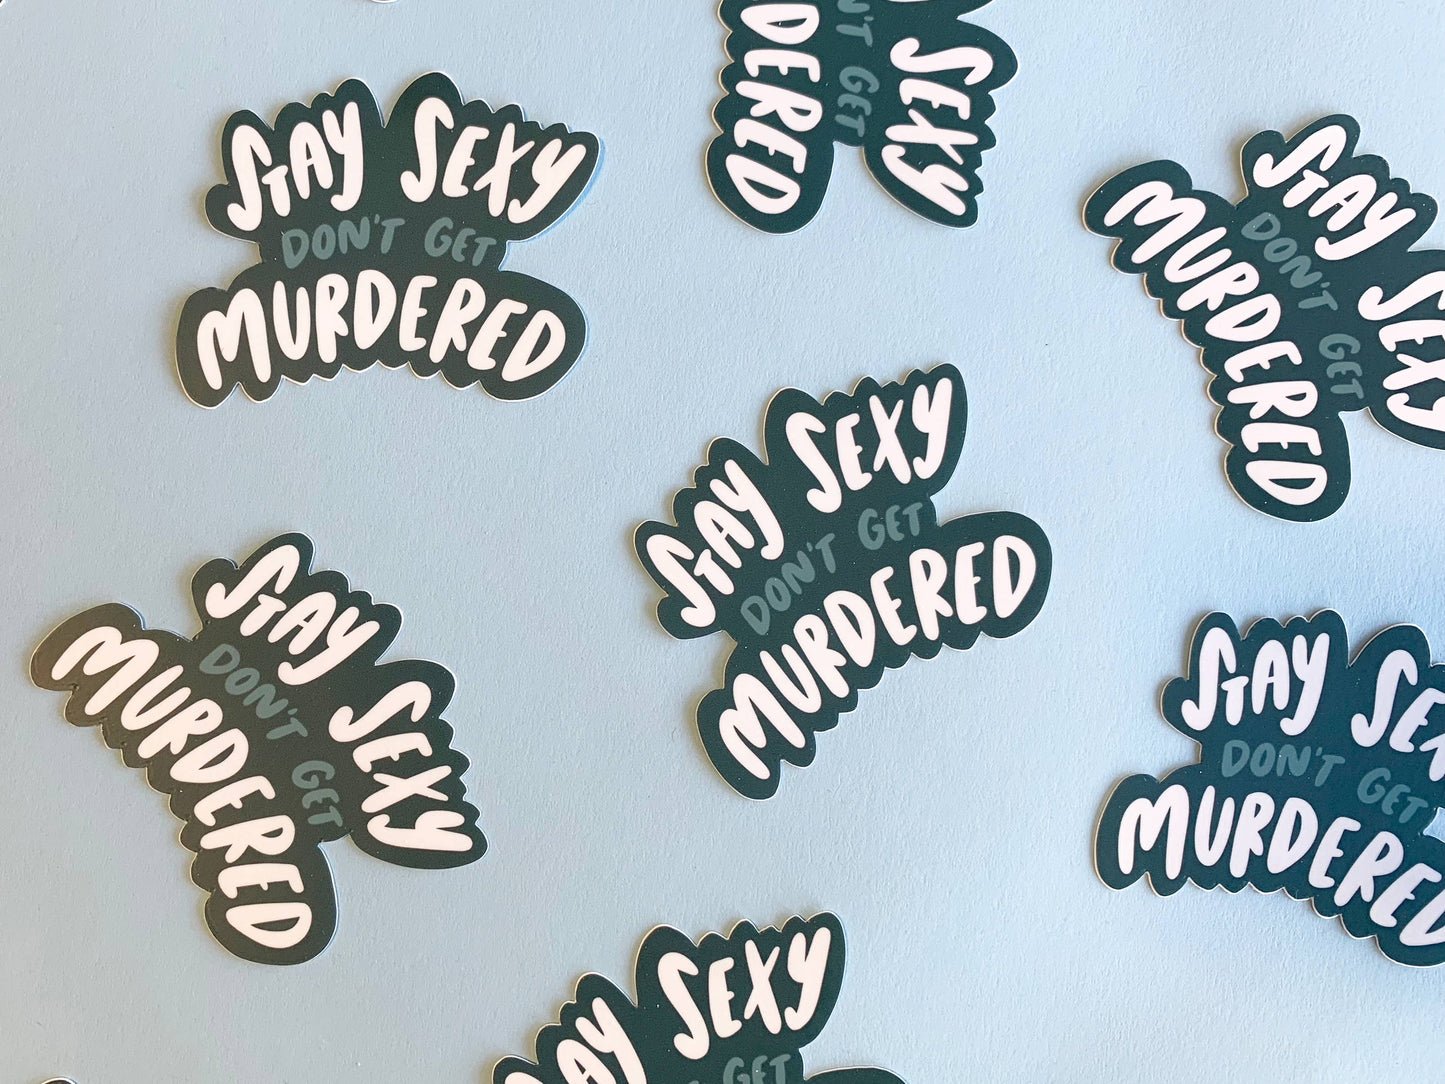 Stay sexy don't get murdered sticker